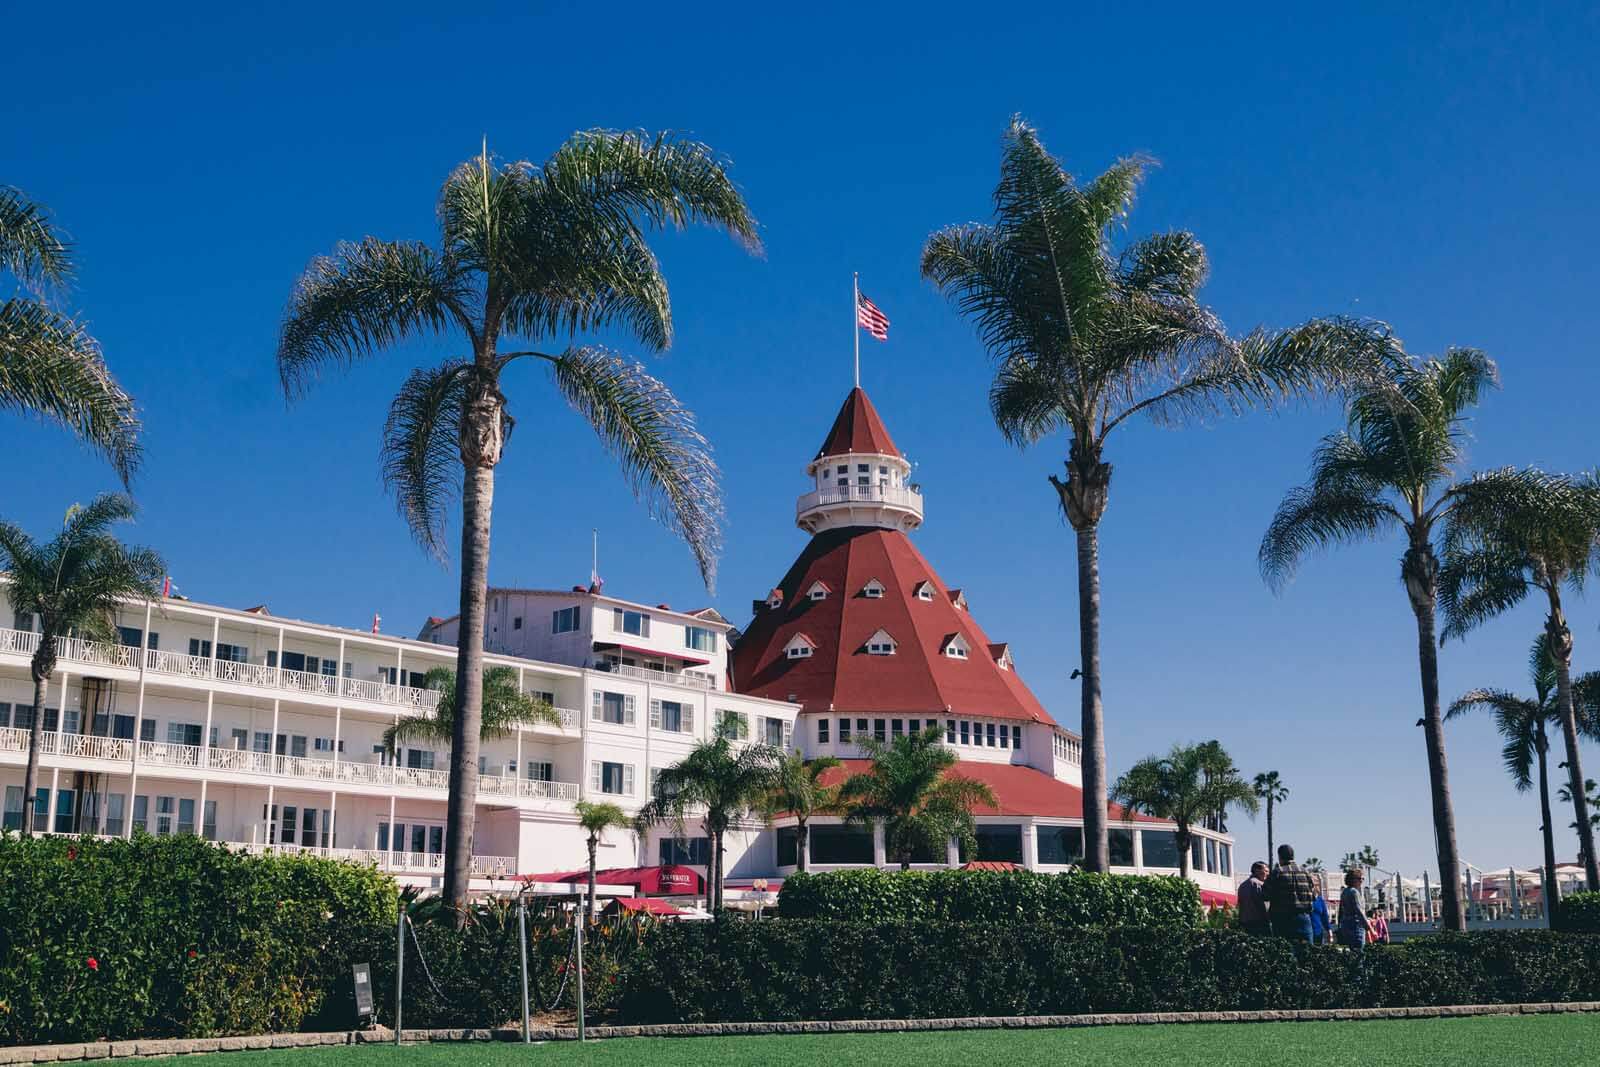 Hotel Del Coronado in San Diego